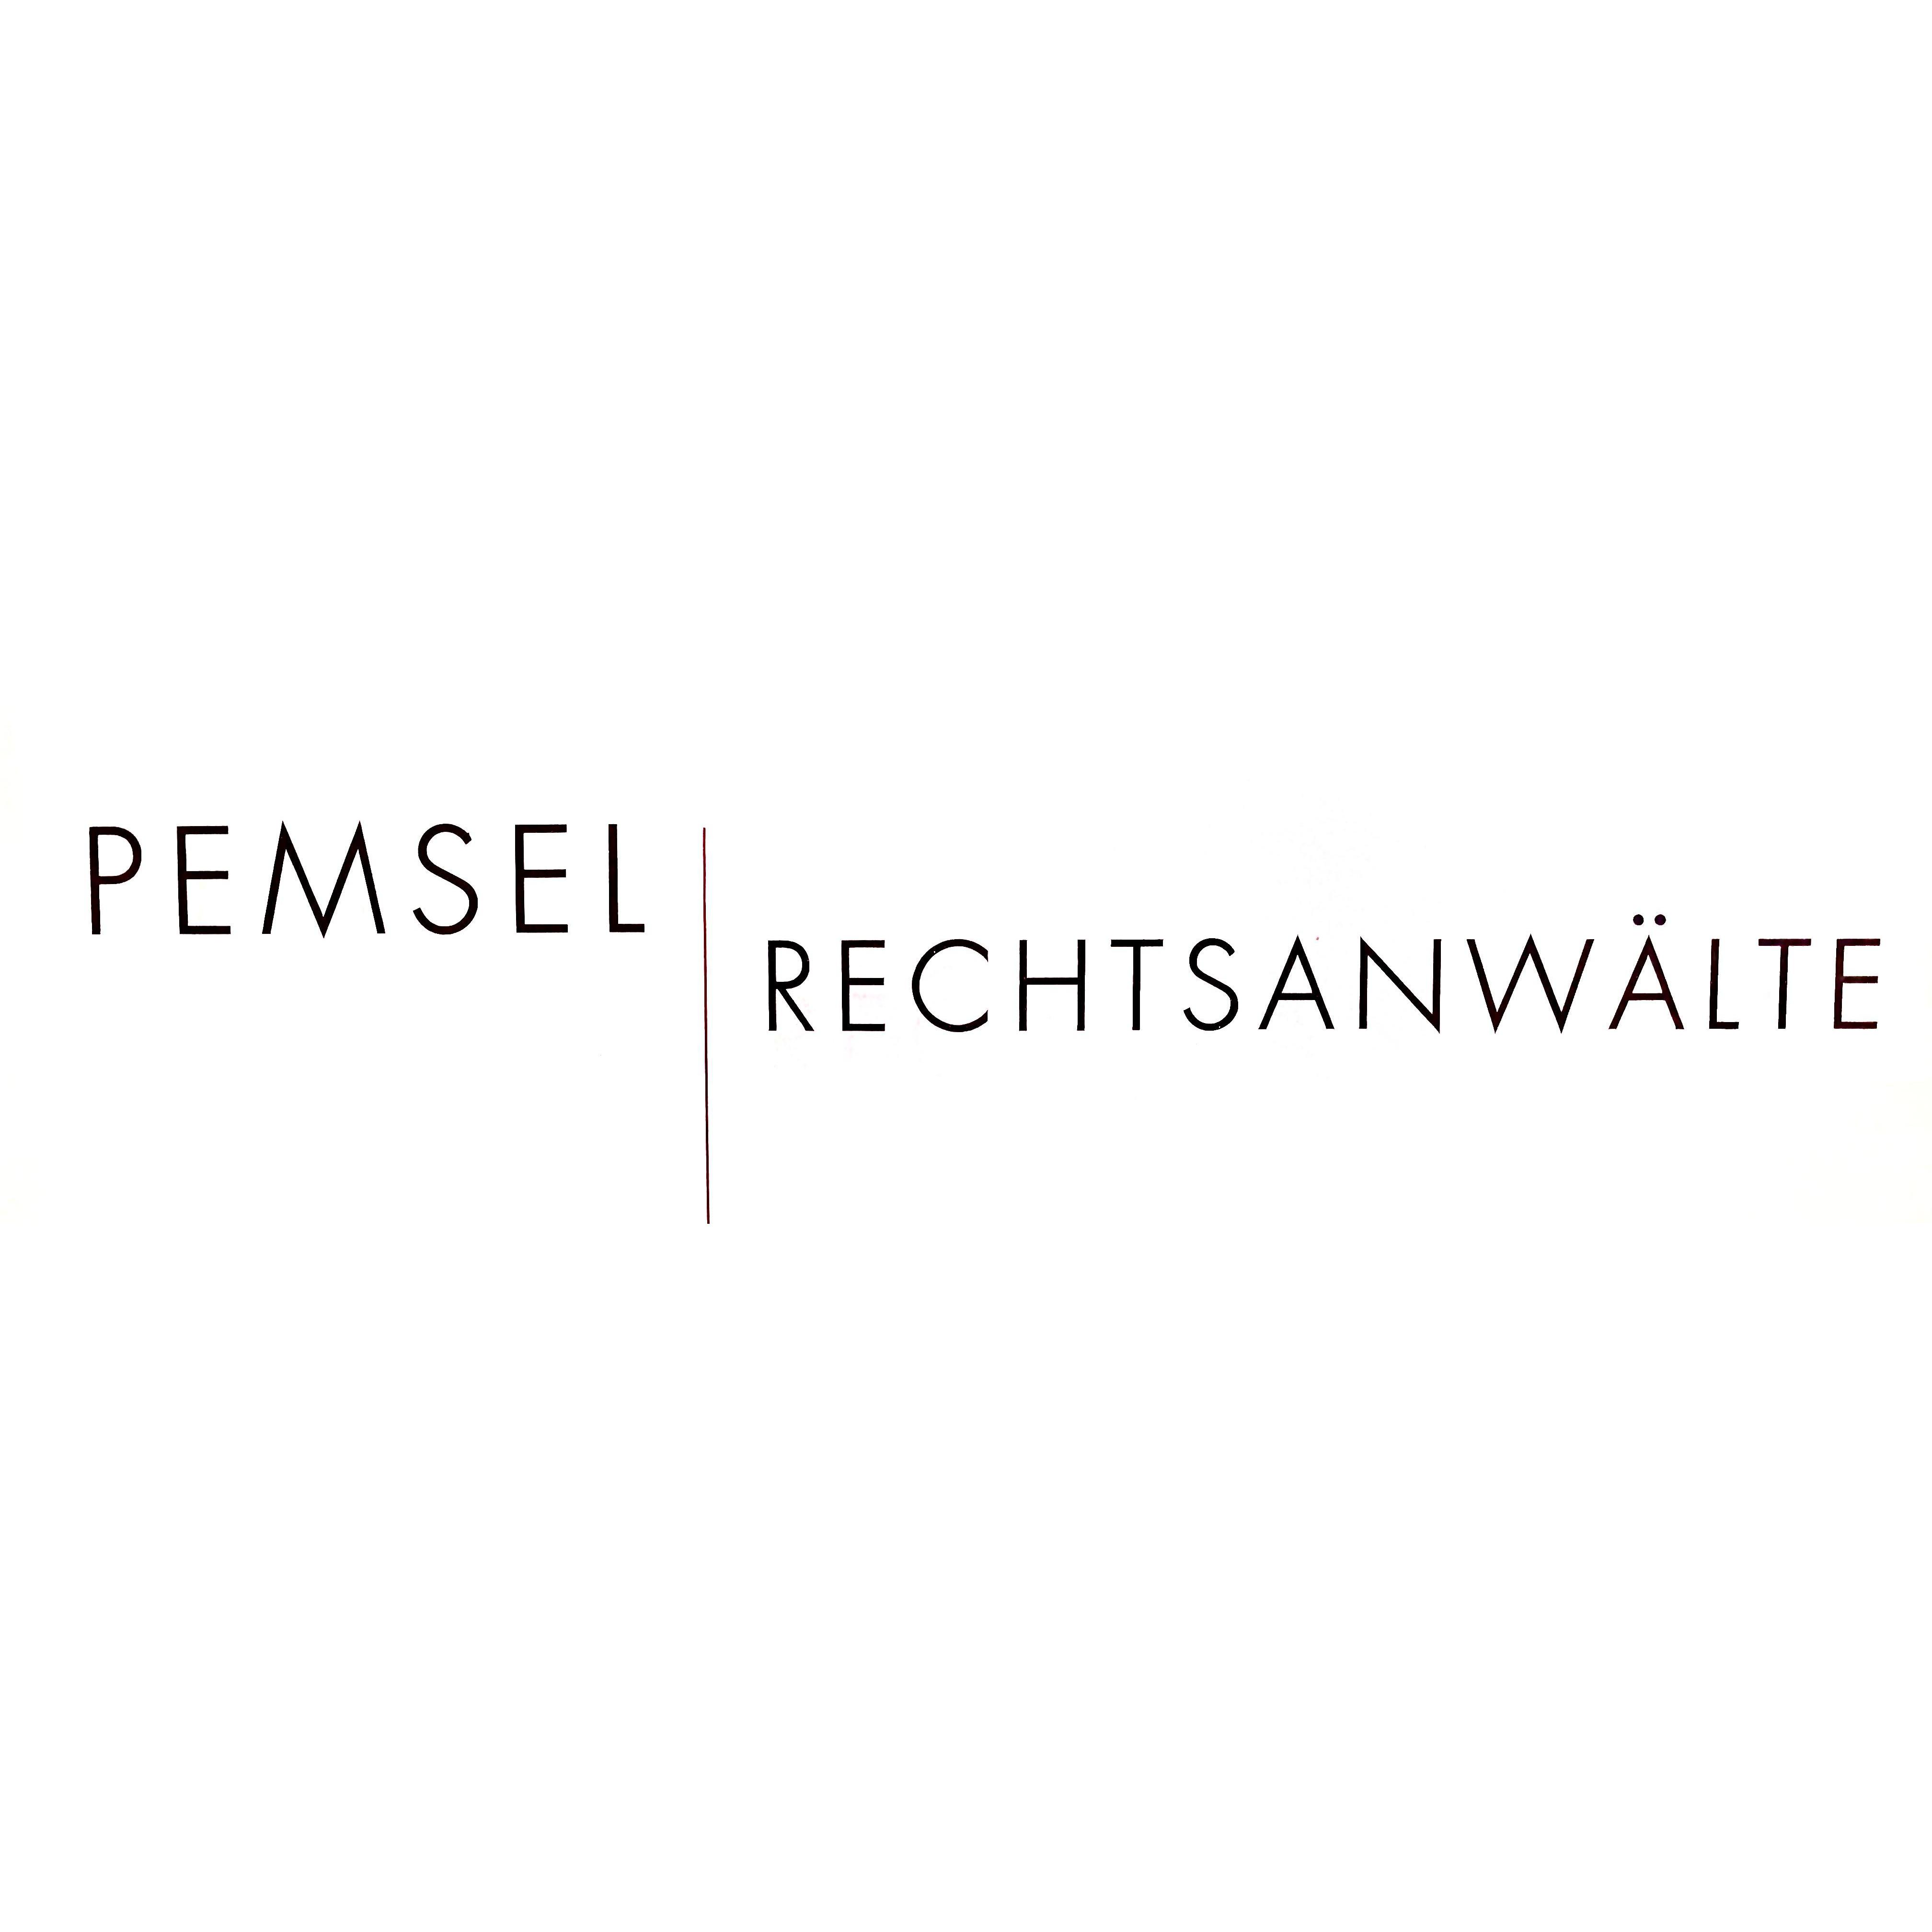 Pemsel Rechtsanwälte Hersbruck in Hersbruck - Logo